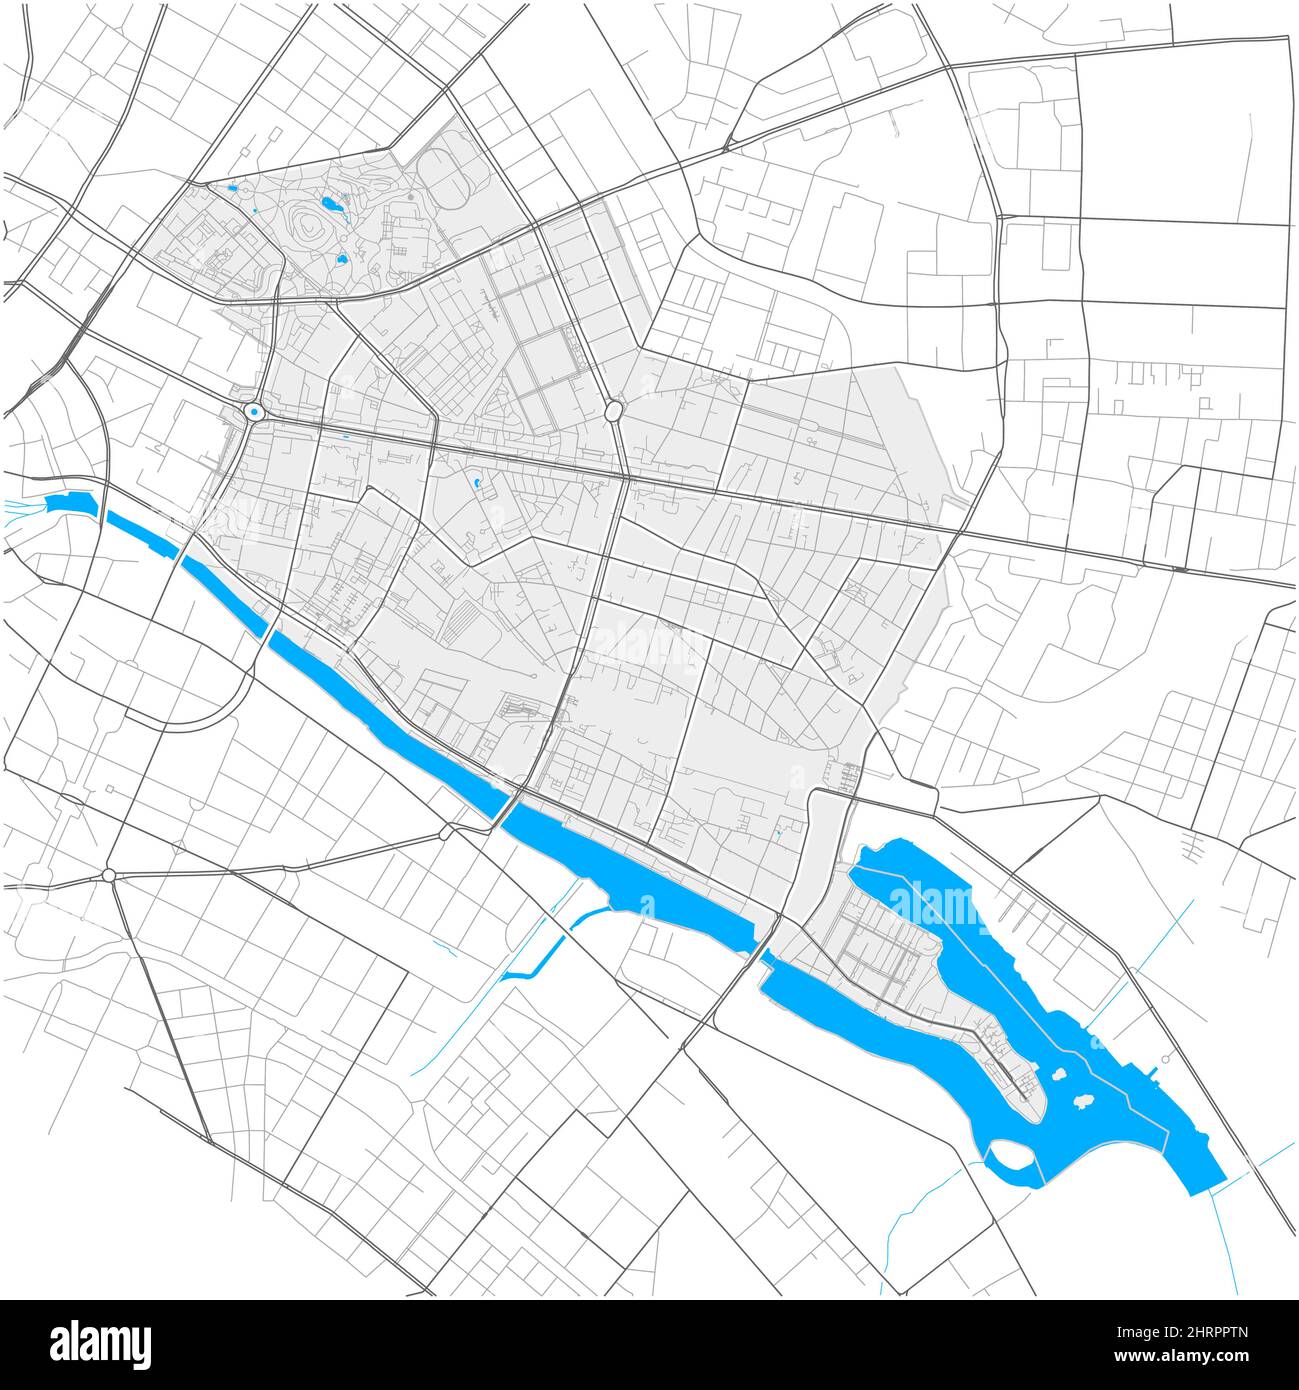 Friedrichshain, Berlin, ALLEMAGNE, carte vectorielle haute précision avec limites de la ville et chemins modifiables. Contours blancs pour les routes principales. Beaucoup de chemins plus petits Illustration de Vecteur